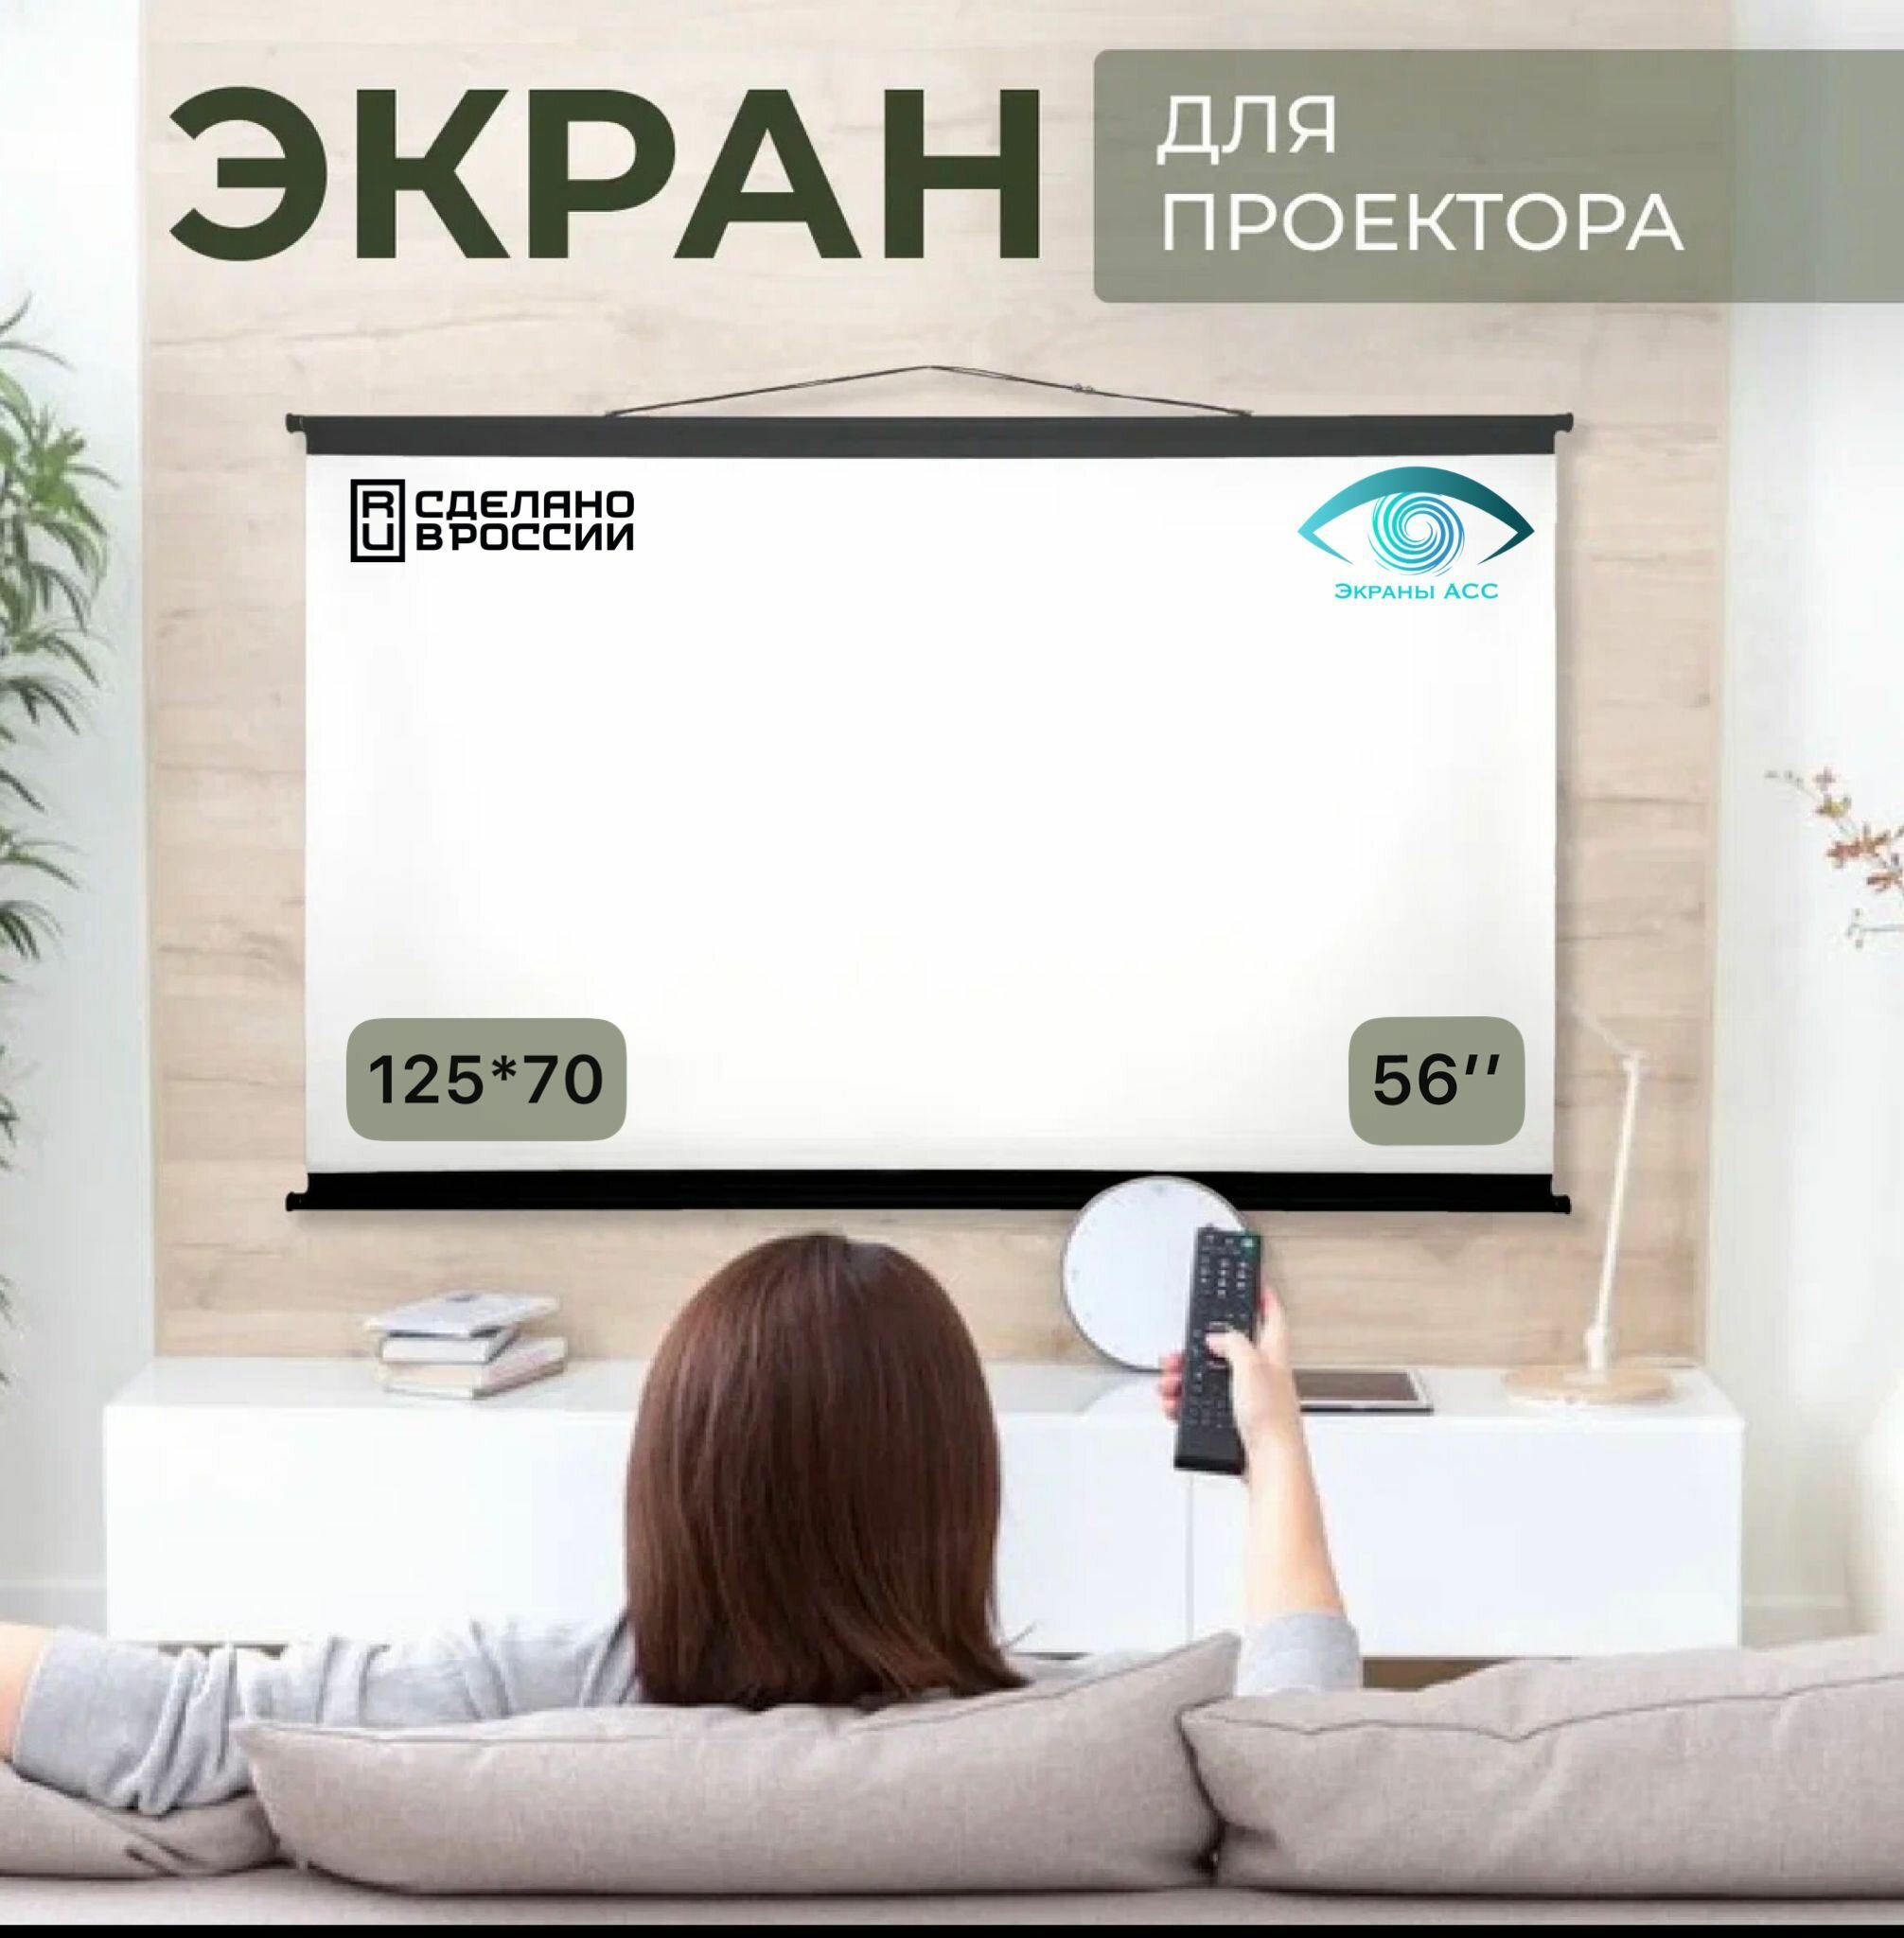 Экран для проектора "Экраны АСС" Ultra 125x70 формат 16:9 56 дюймов настенно-потолочный